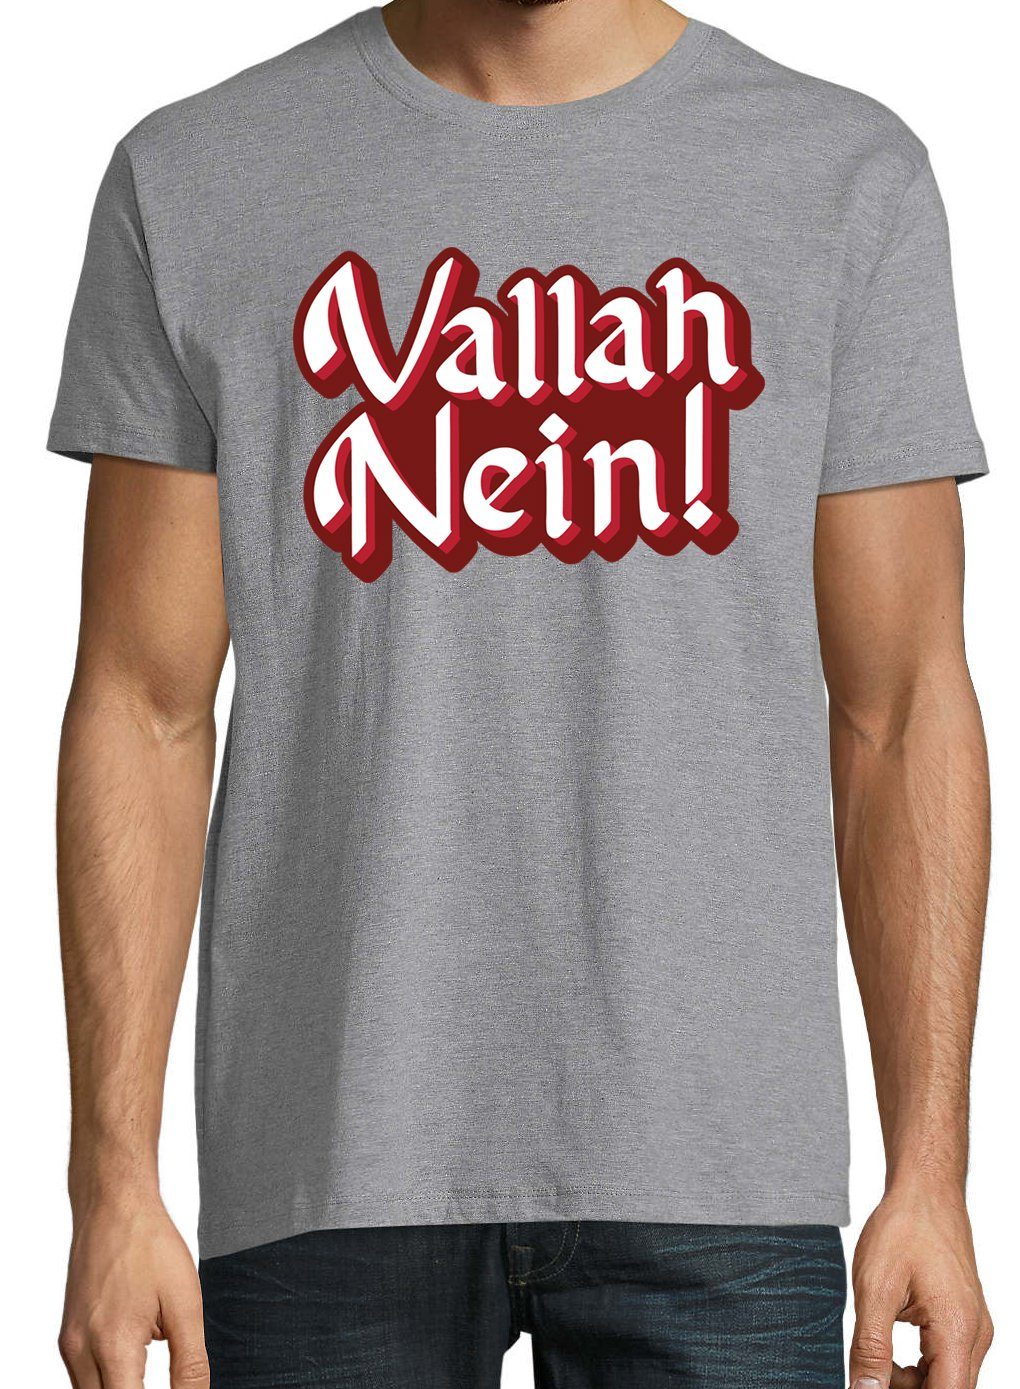 Youth Spruch mit Designz Grau lustigem T-Shirt "Vallah T-Shirt Nein" Herren